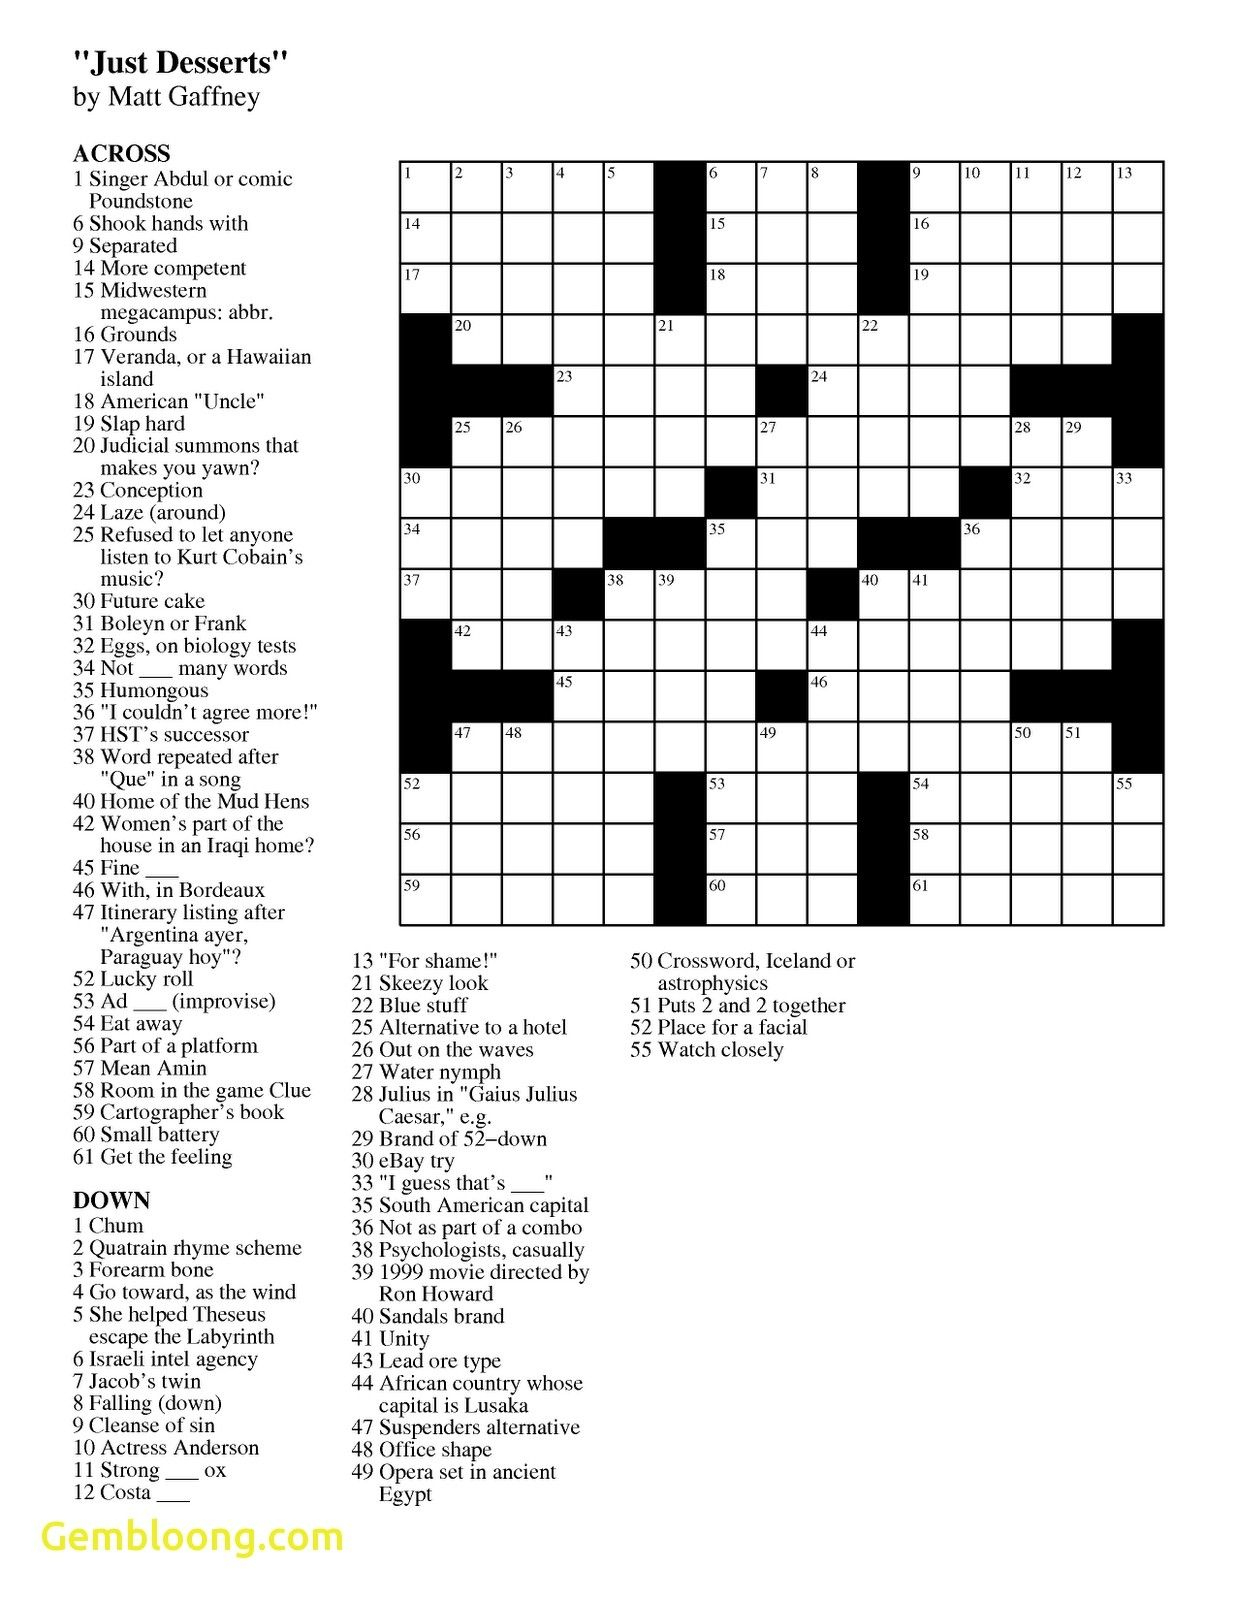 kindle download crossword clue